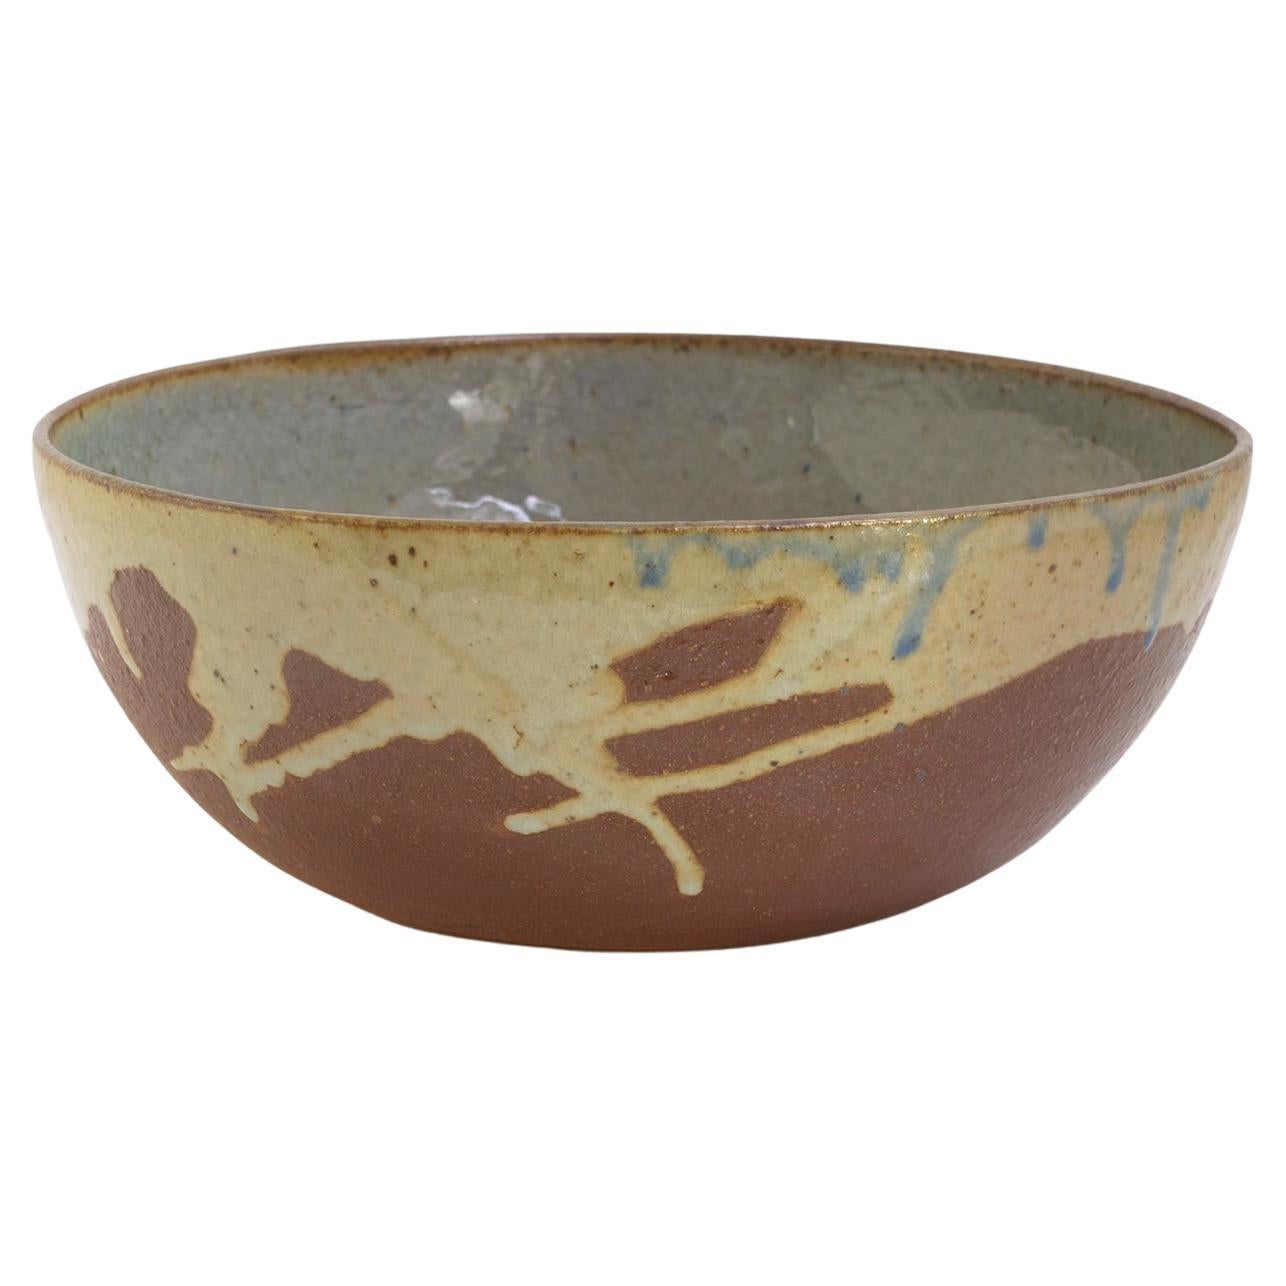 Ulla & Gustav Kraitz Hand Thrown and Glazed Ceramic Bowl, Sweden, 1976